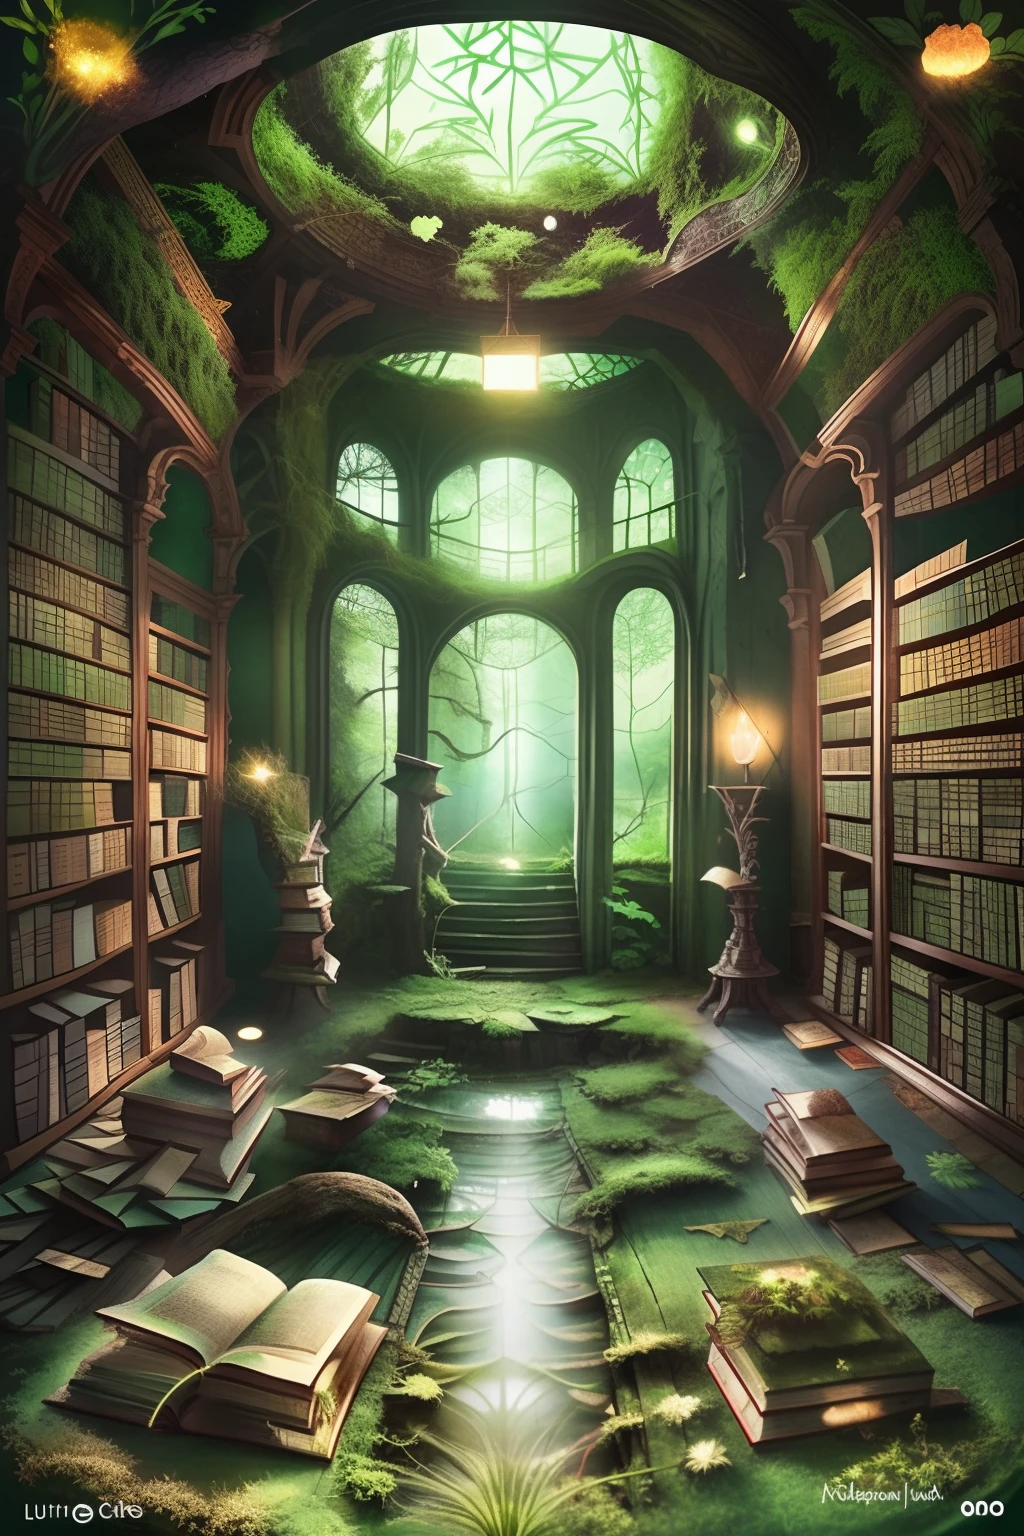 废弃图书馆的迷人杰作, 地板中央覆盖着一层森林绿色的苔藓，上面绘有极其精细的神话书籍插图, 被过滤后的柔和光线照亮.